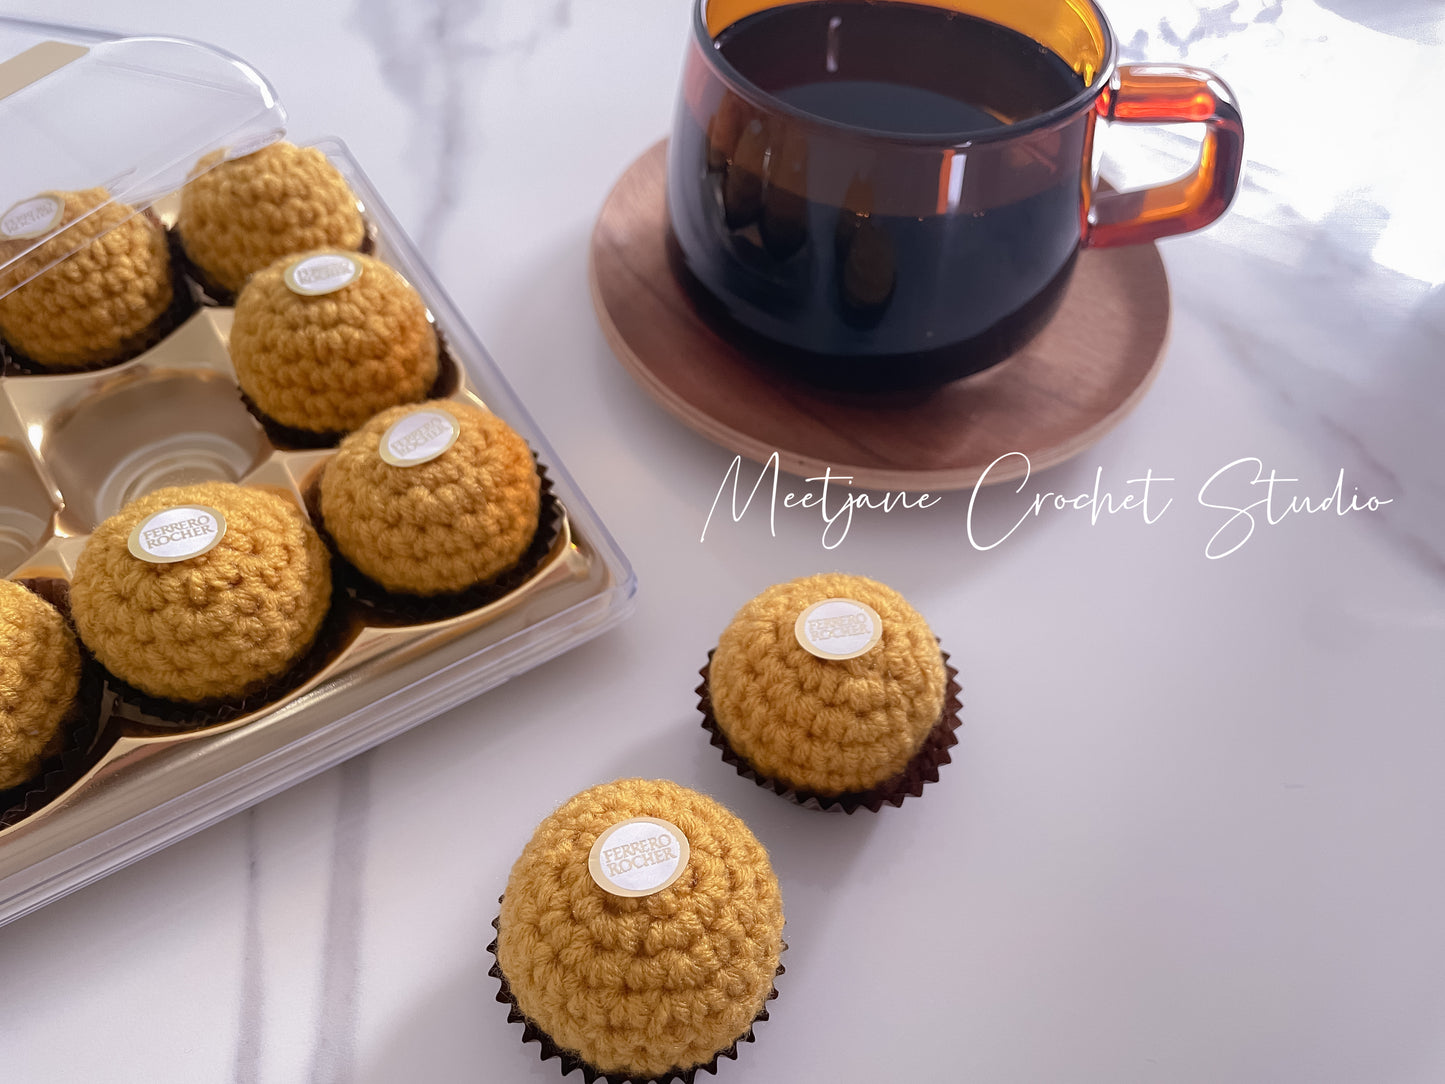 Crochet gift|Melbourne |Crochet Ferrero|Valentine's Day gift